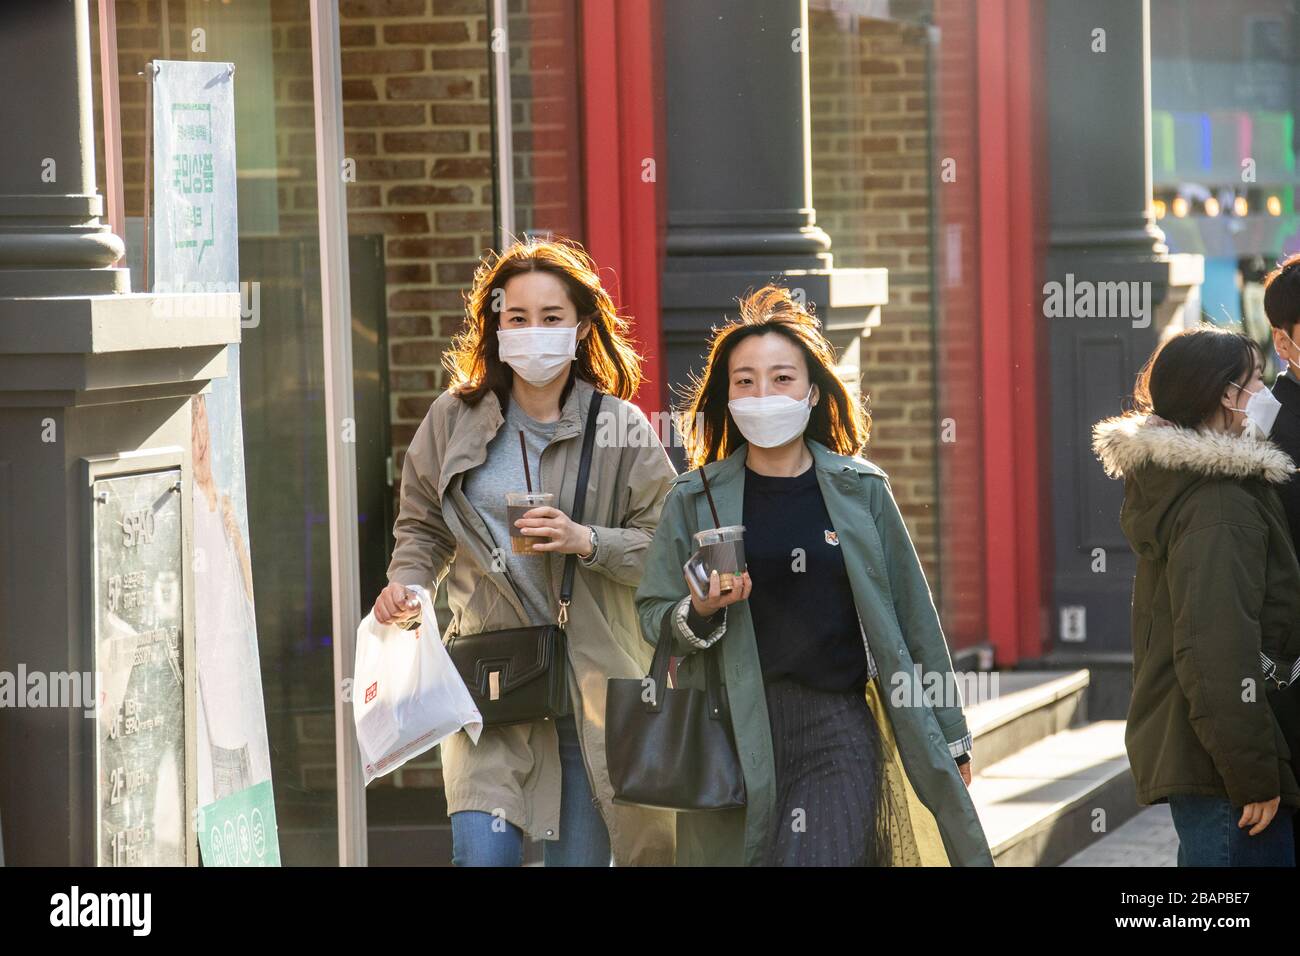 Mujeres jóvenes que llevan máscaras protectoras durante la pandemia de Coronavirus, Seúl, Corea del Sur Foto de stock